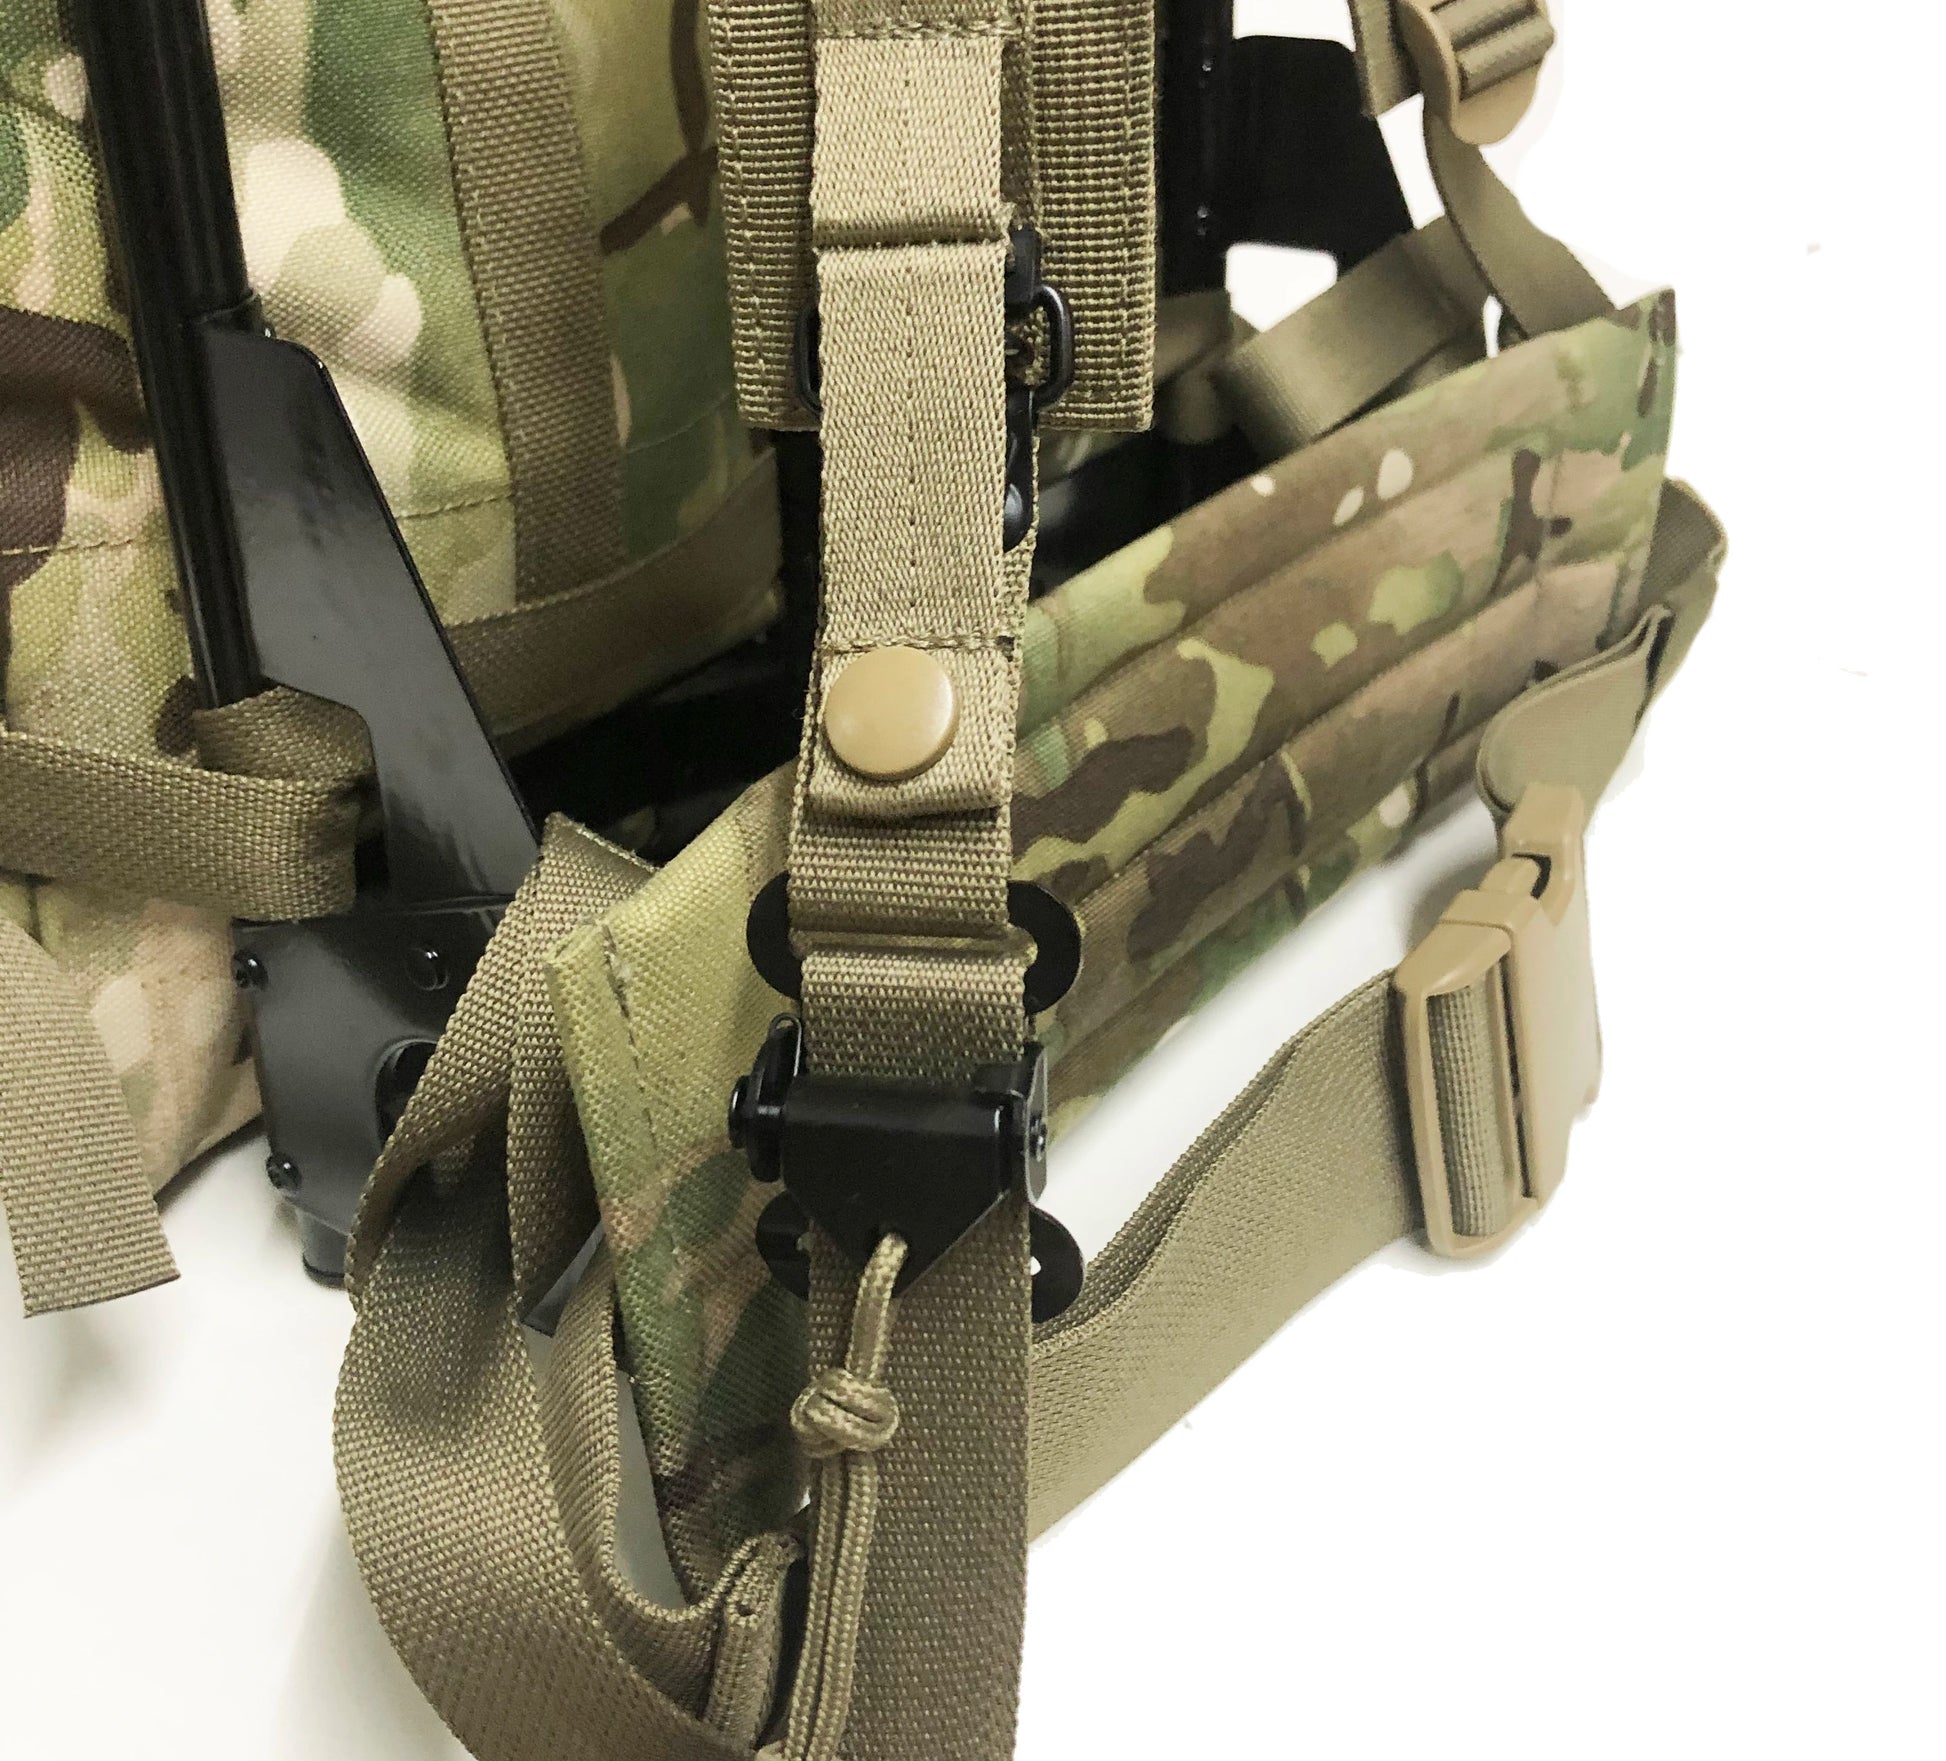  Genuine ALICE Pack Aluminum Frame Camouflage Backpack Belt 